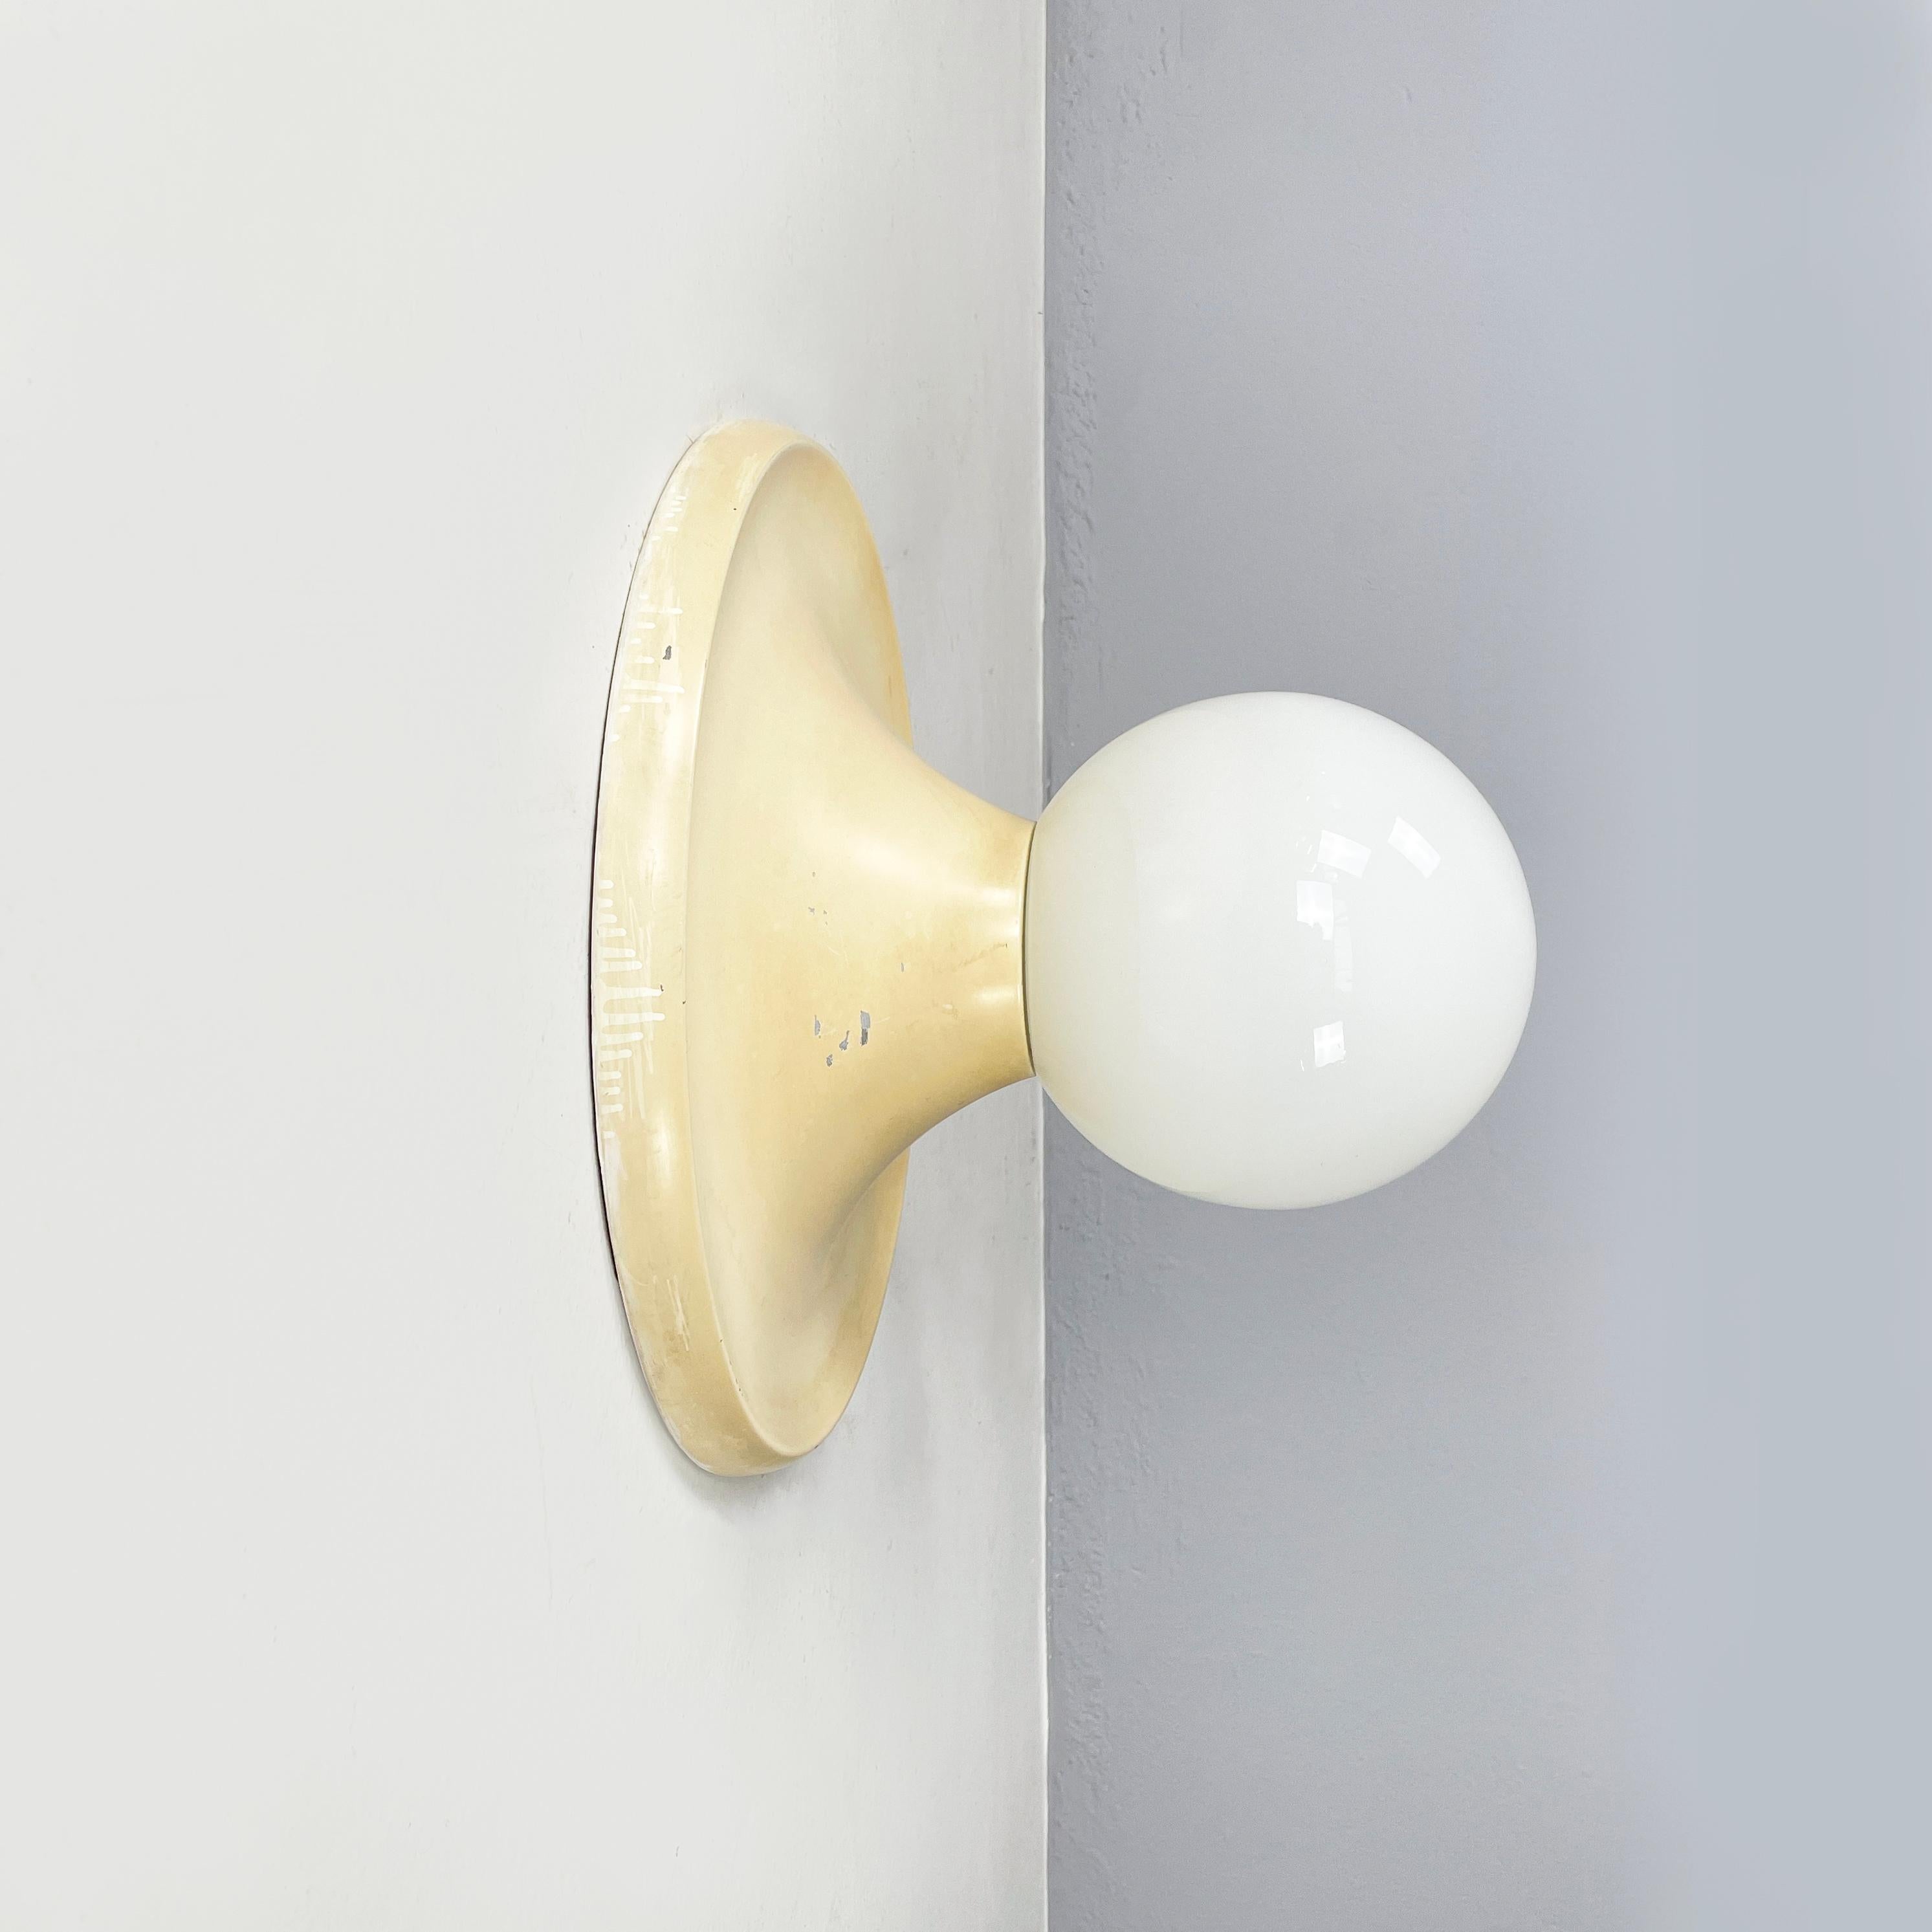 Italienische Wandleuchte Light Ball von Gebrüder Castiglioni für Flos 1960er Jahre
Elegante Wand- oder Deckenleuchte mod. Light Ball mit sphärischem Opalglasdiffusor. Der runde Sockel ist aus weißem, elfenbeinfarben emailliertem Metall.
Hergestellt